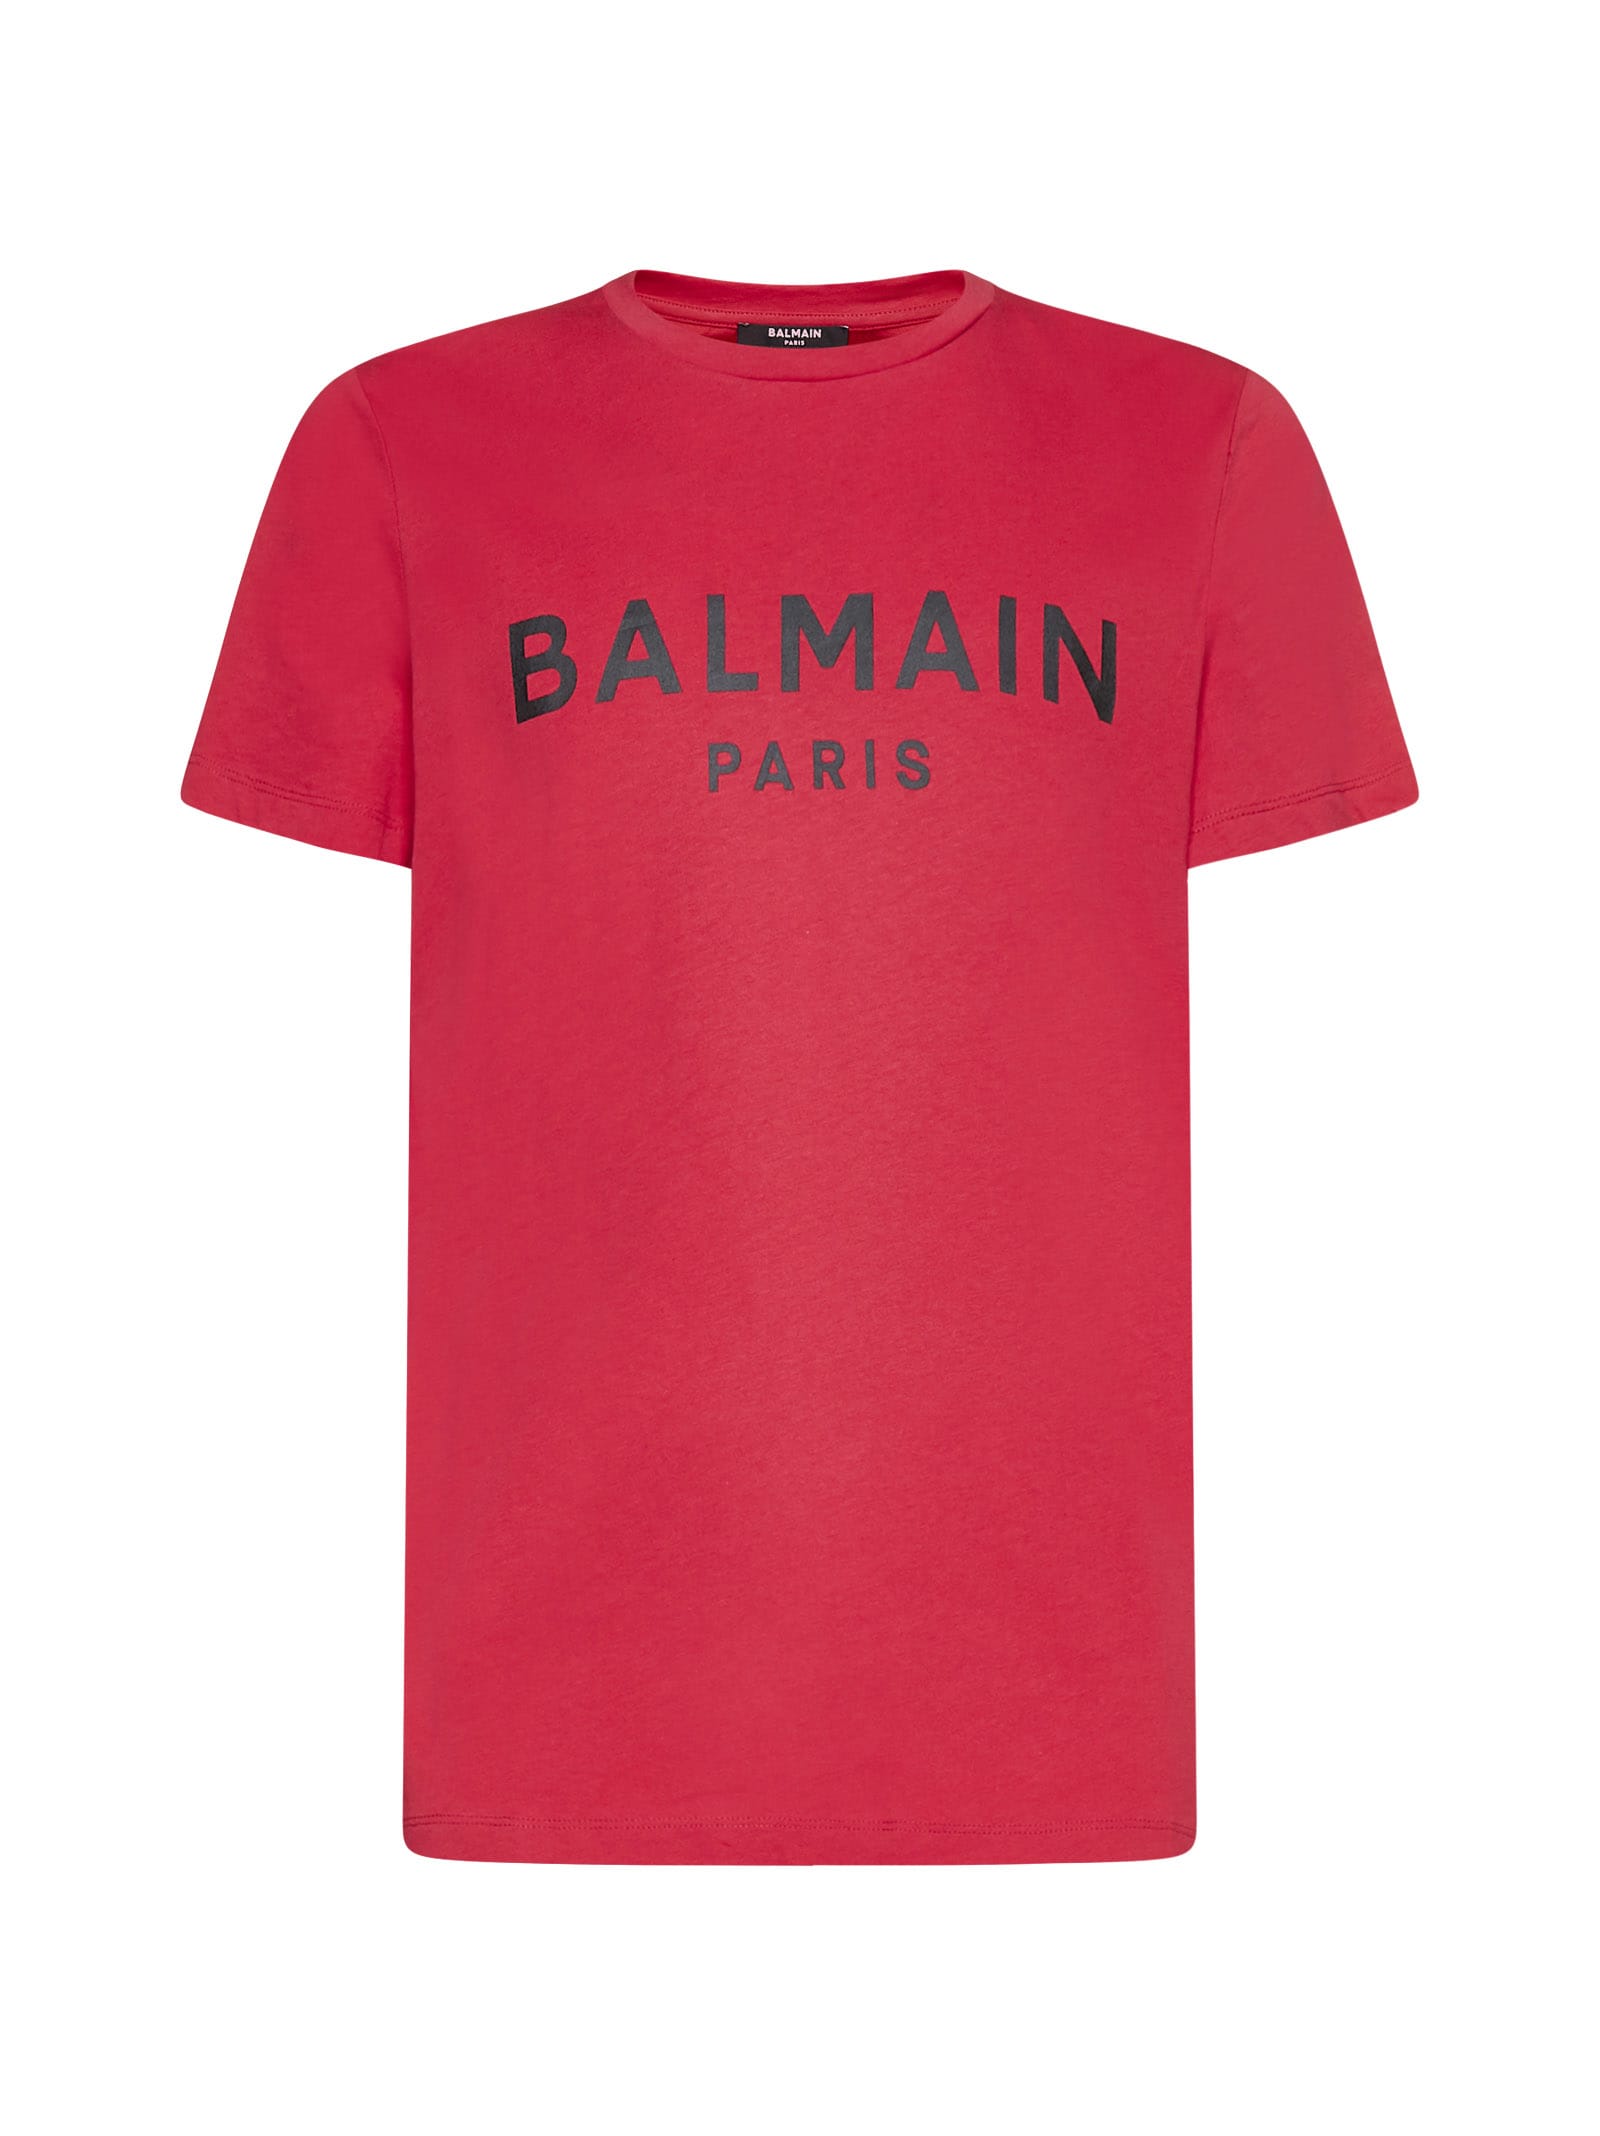 【トップス】 バルマン BALMAIN メンズ トップス Tシャツ カットソー 半袖 ロゴ フロントBALMAINロゴプレート付・クラッシュ